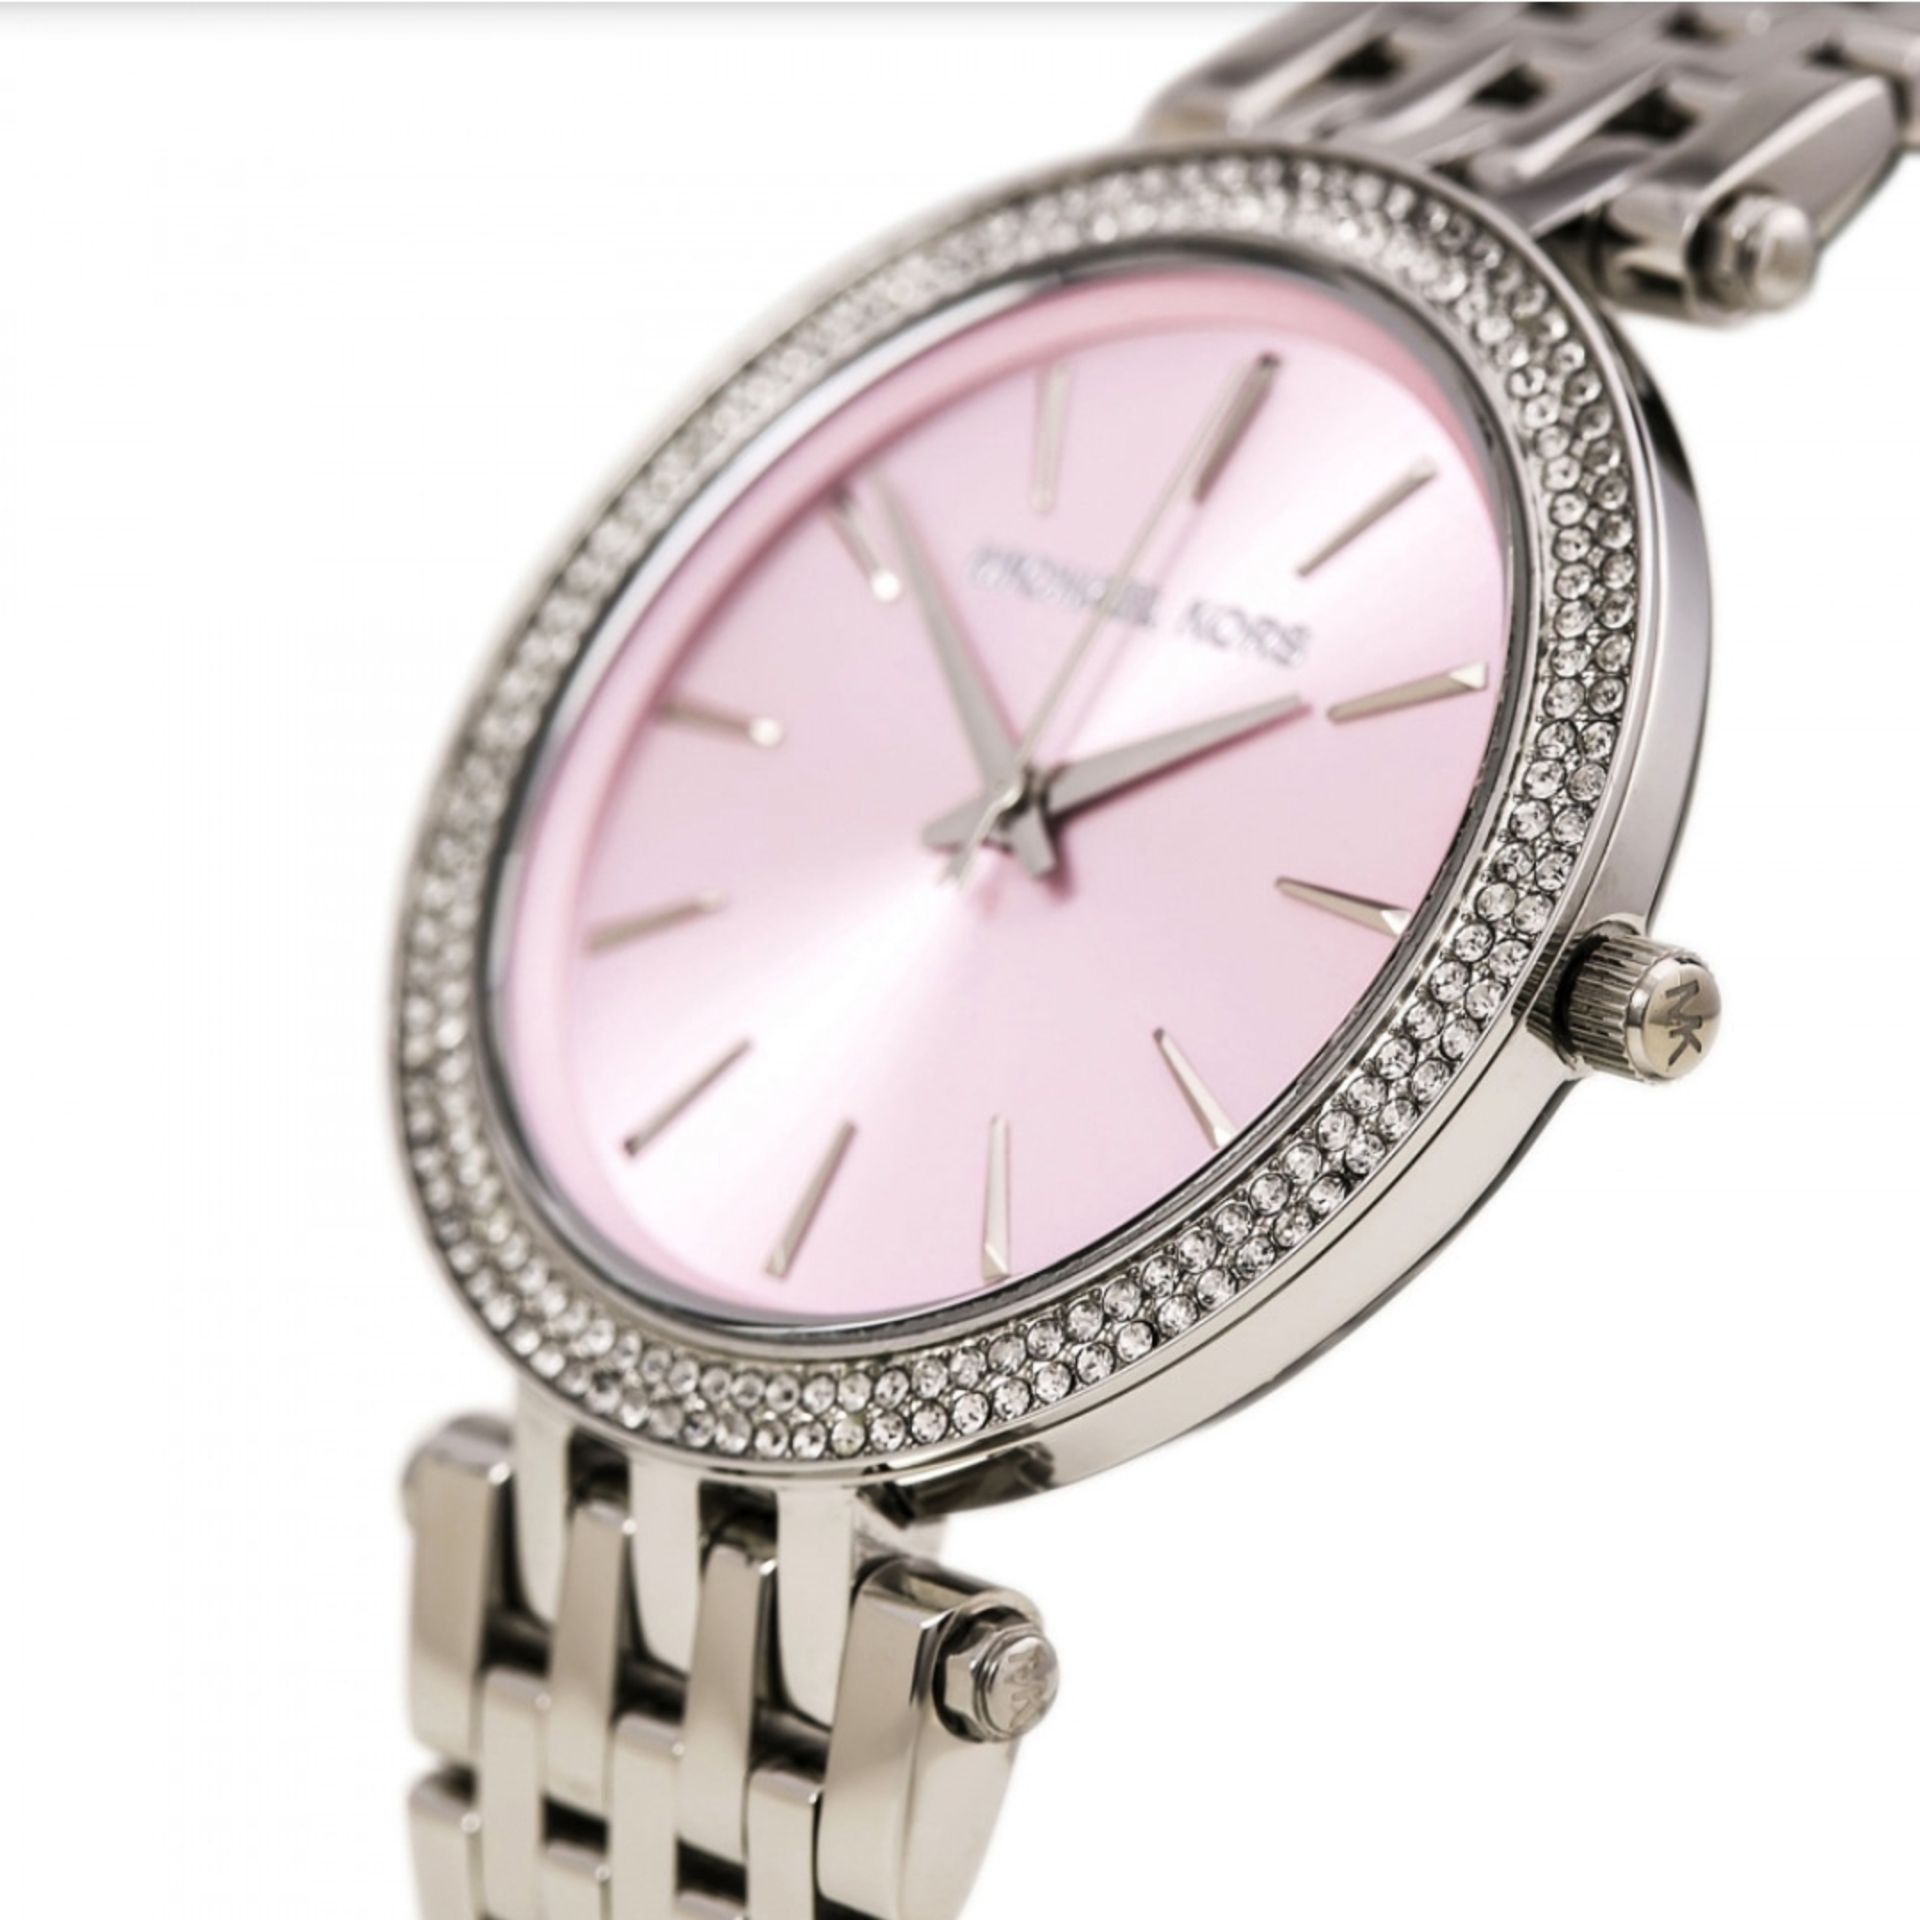 MICHAEL KORS MK3352 Darci Pink & Silver Stainless Steel Ladies Watch - Image 3 of 5